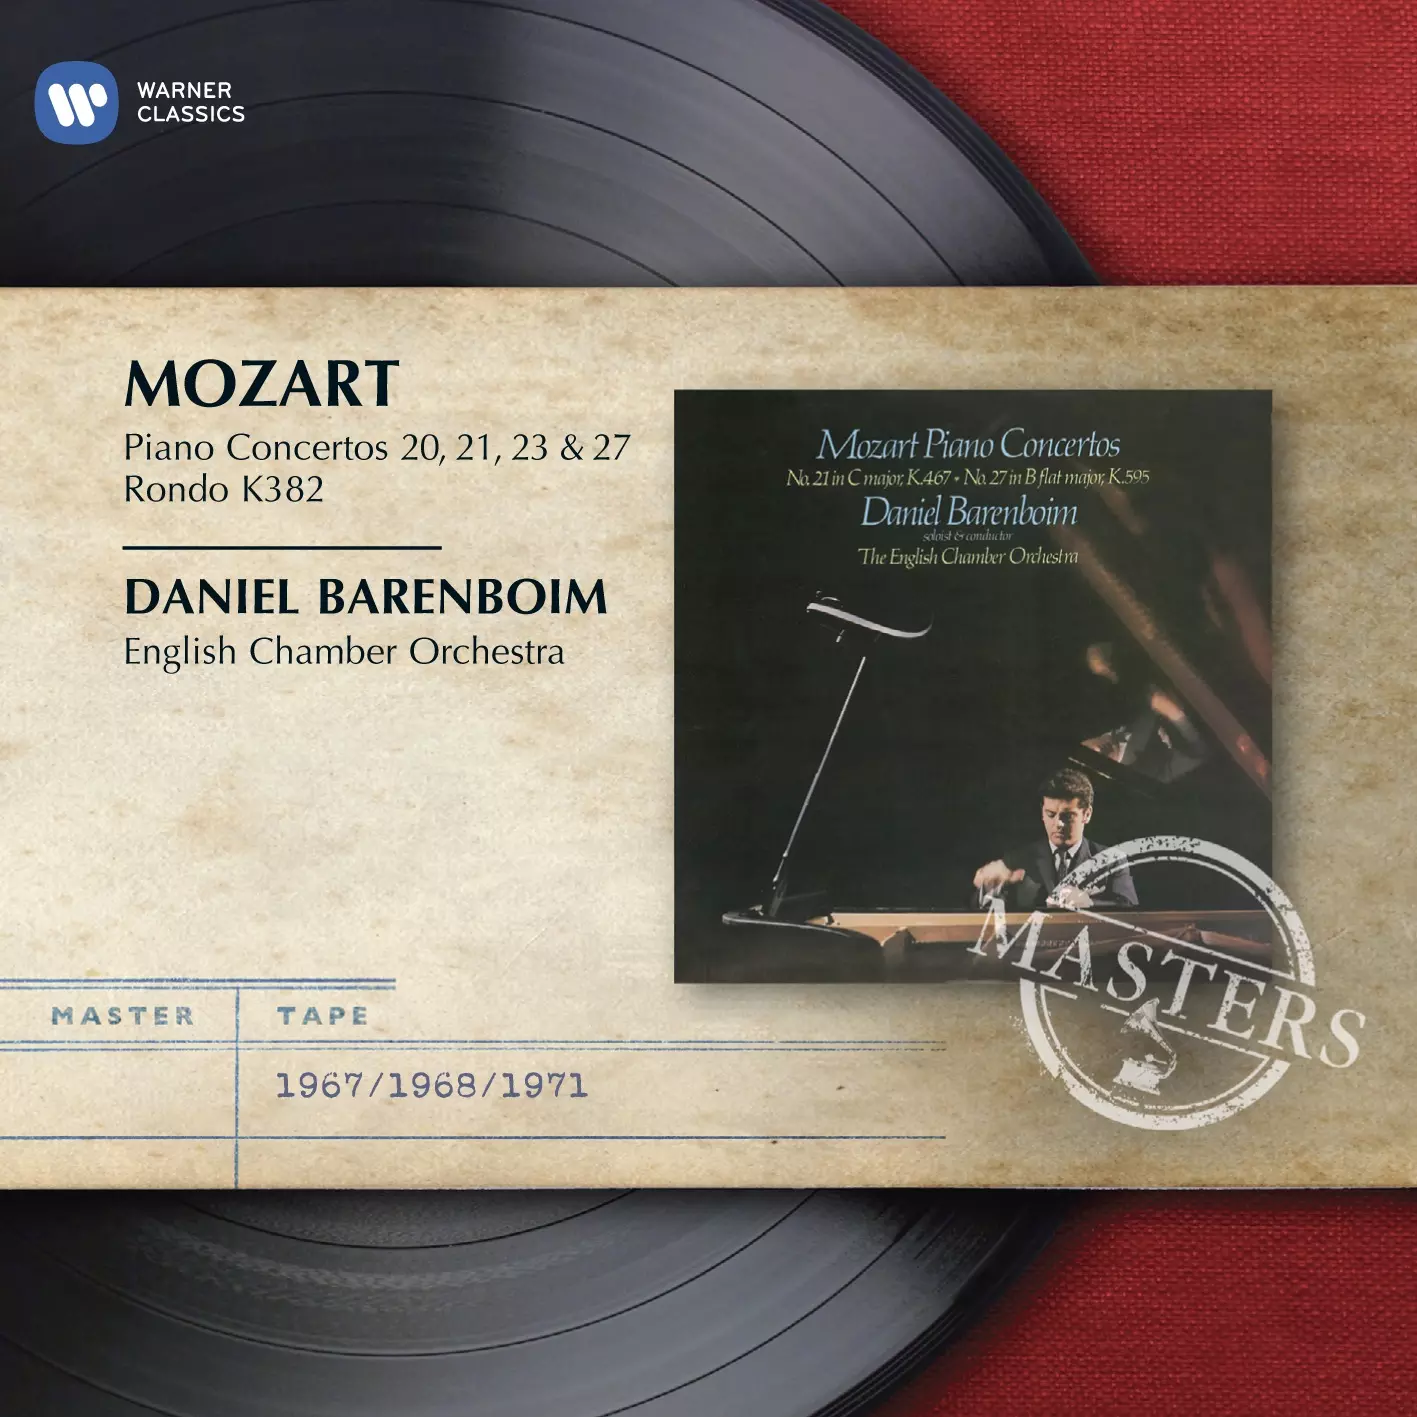 Mozart: Piano Concertos 20, 21, 23 & 27, Rondo